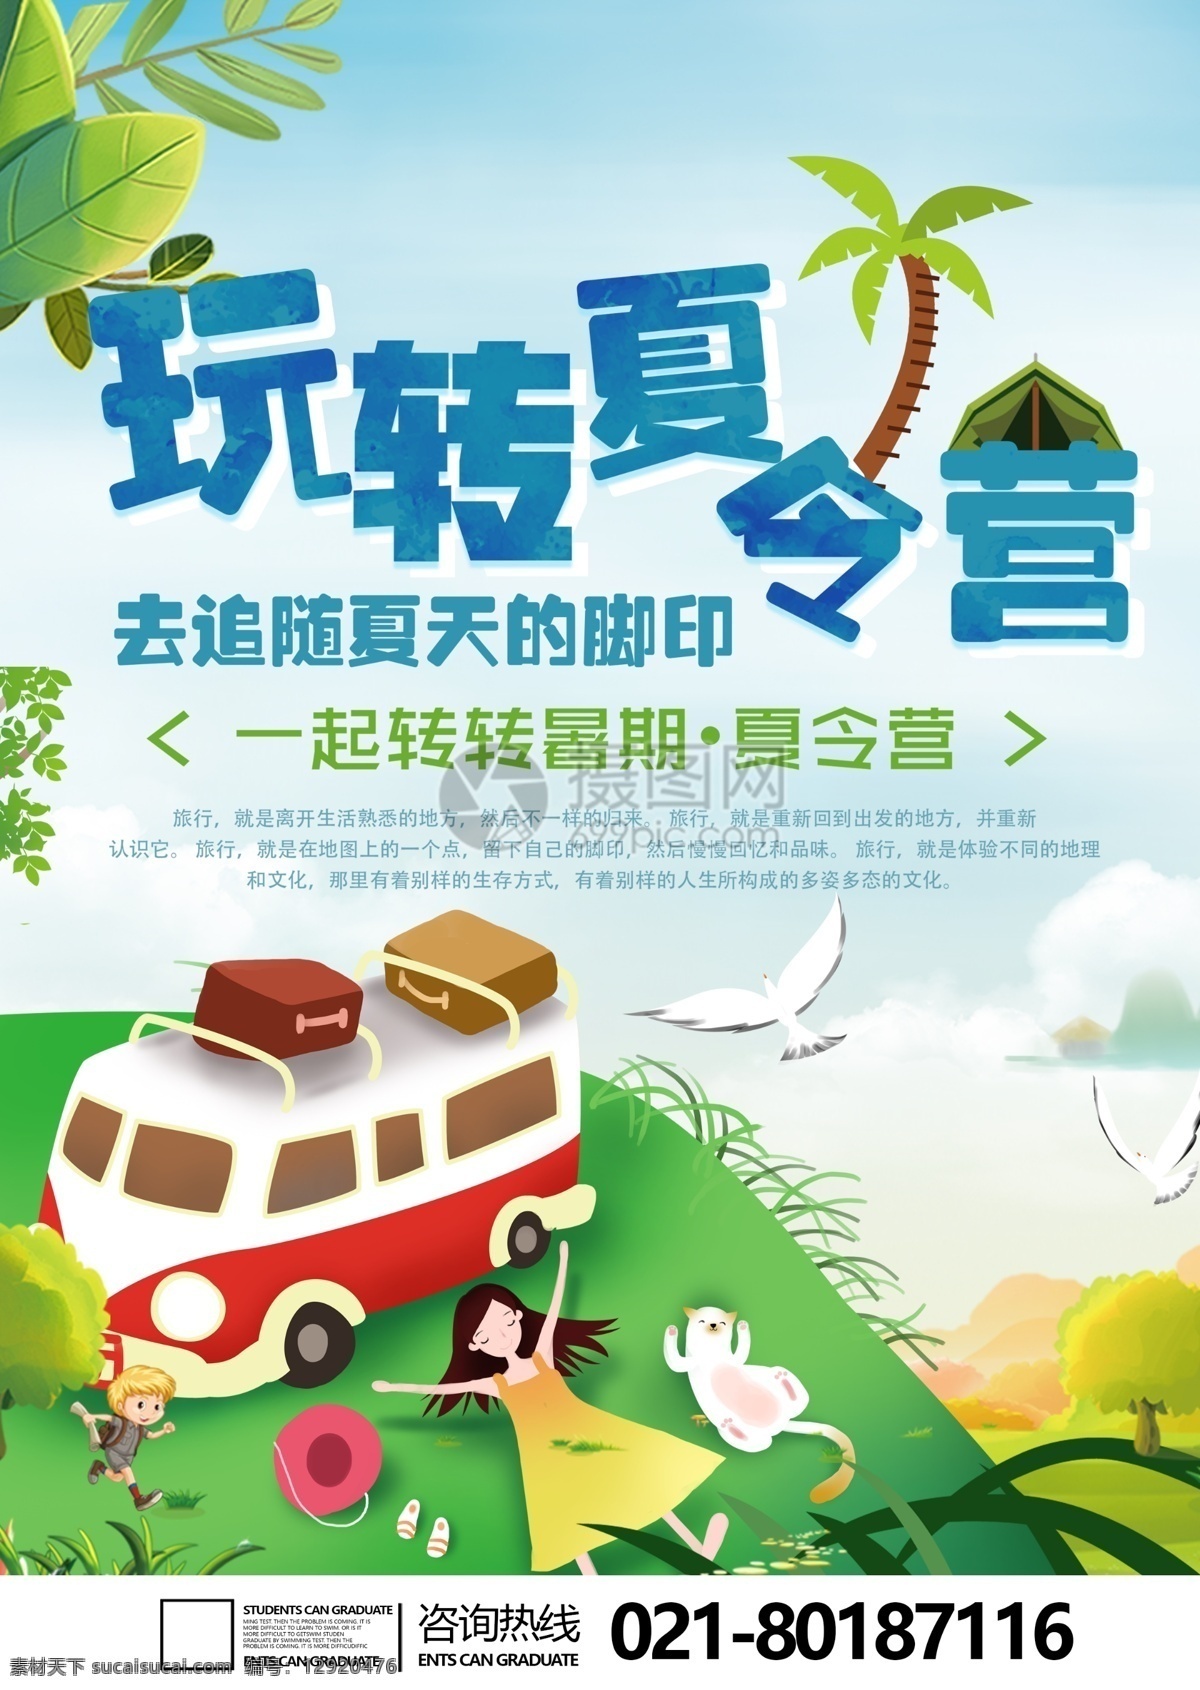 夏令营 招生 宣传单 绿色 暑假 宣传 教育 假期 教育宣传单